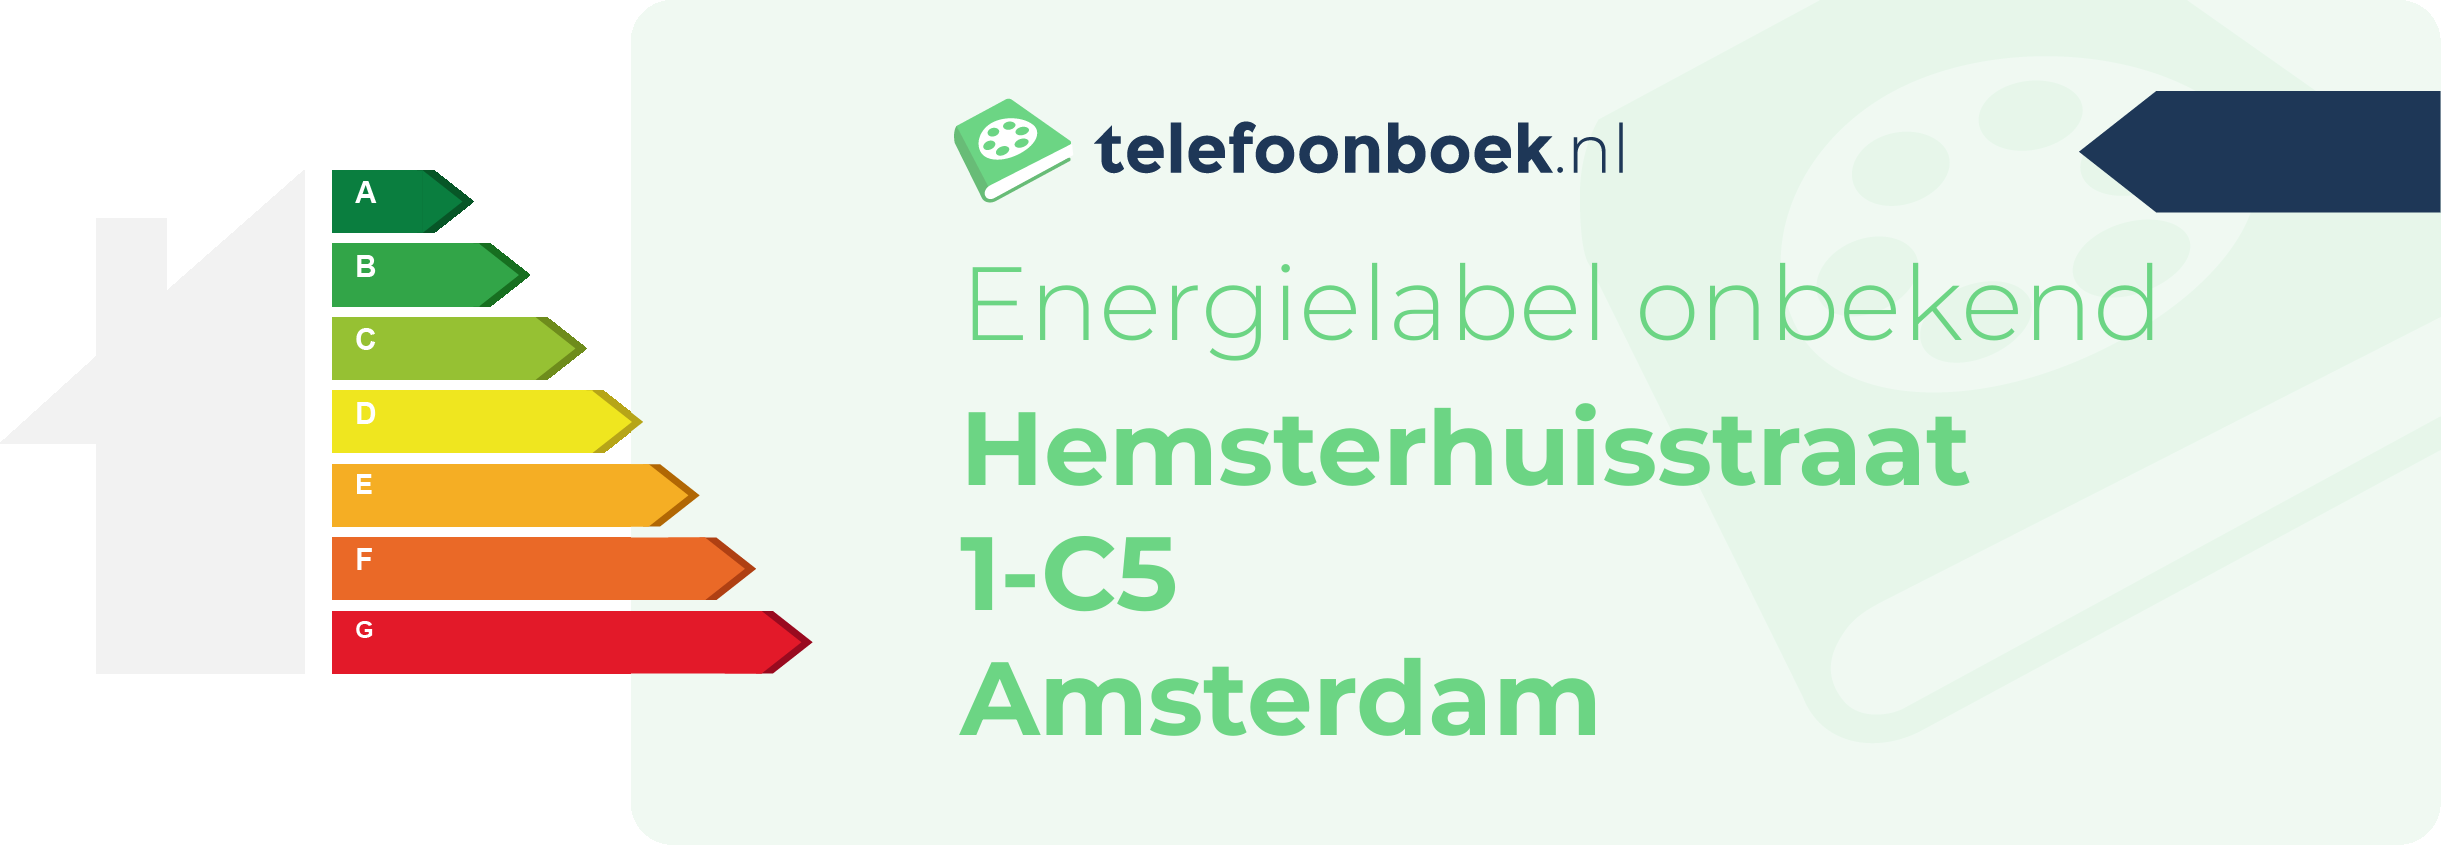 Energielabel Hemsterhuisstraat 1-C5 Amsterdam